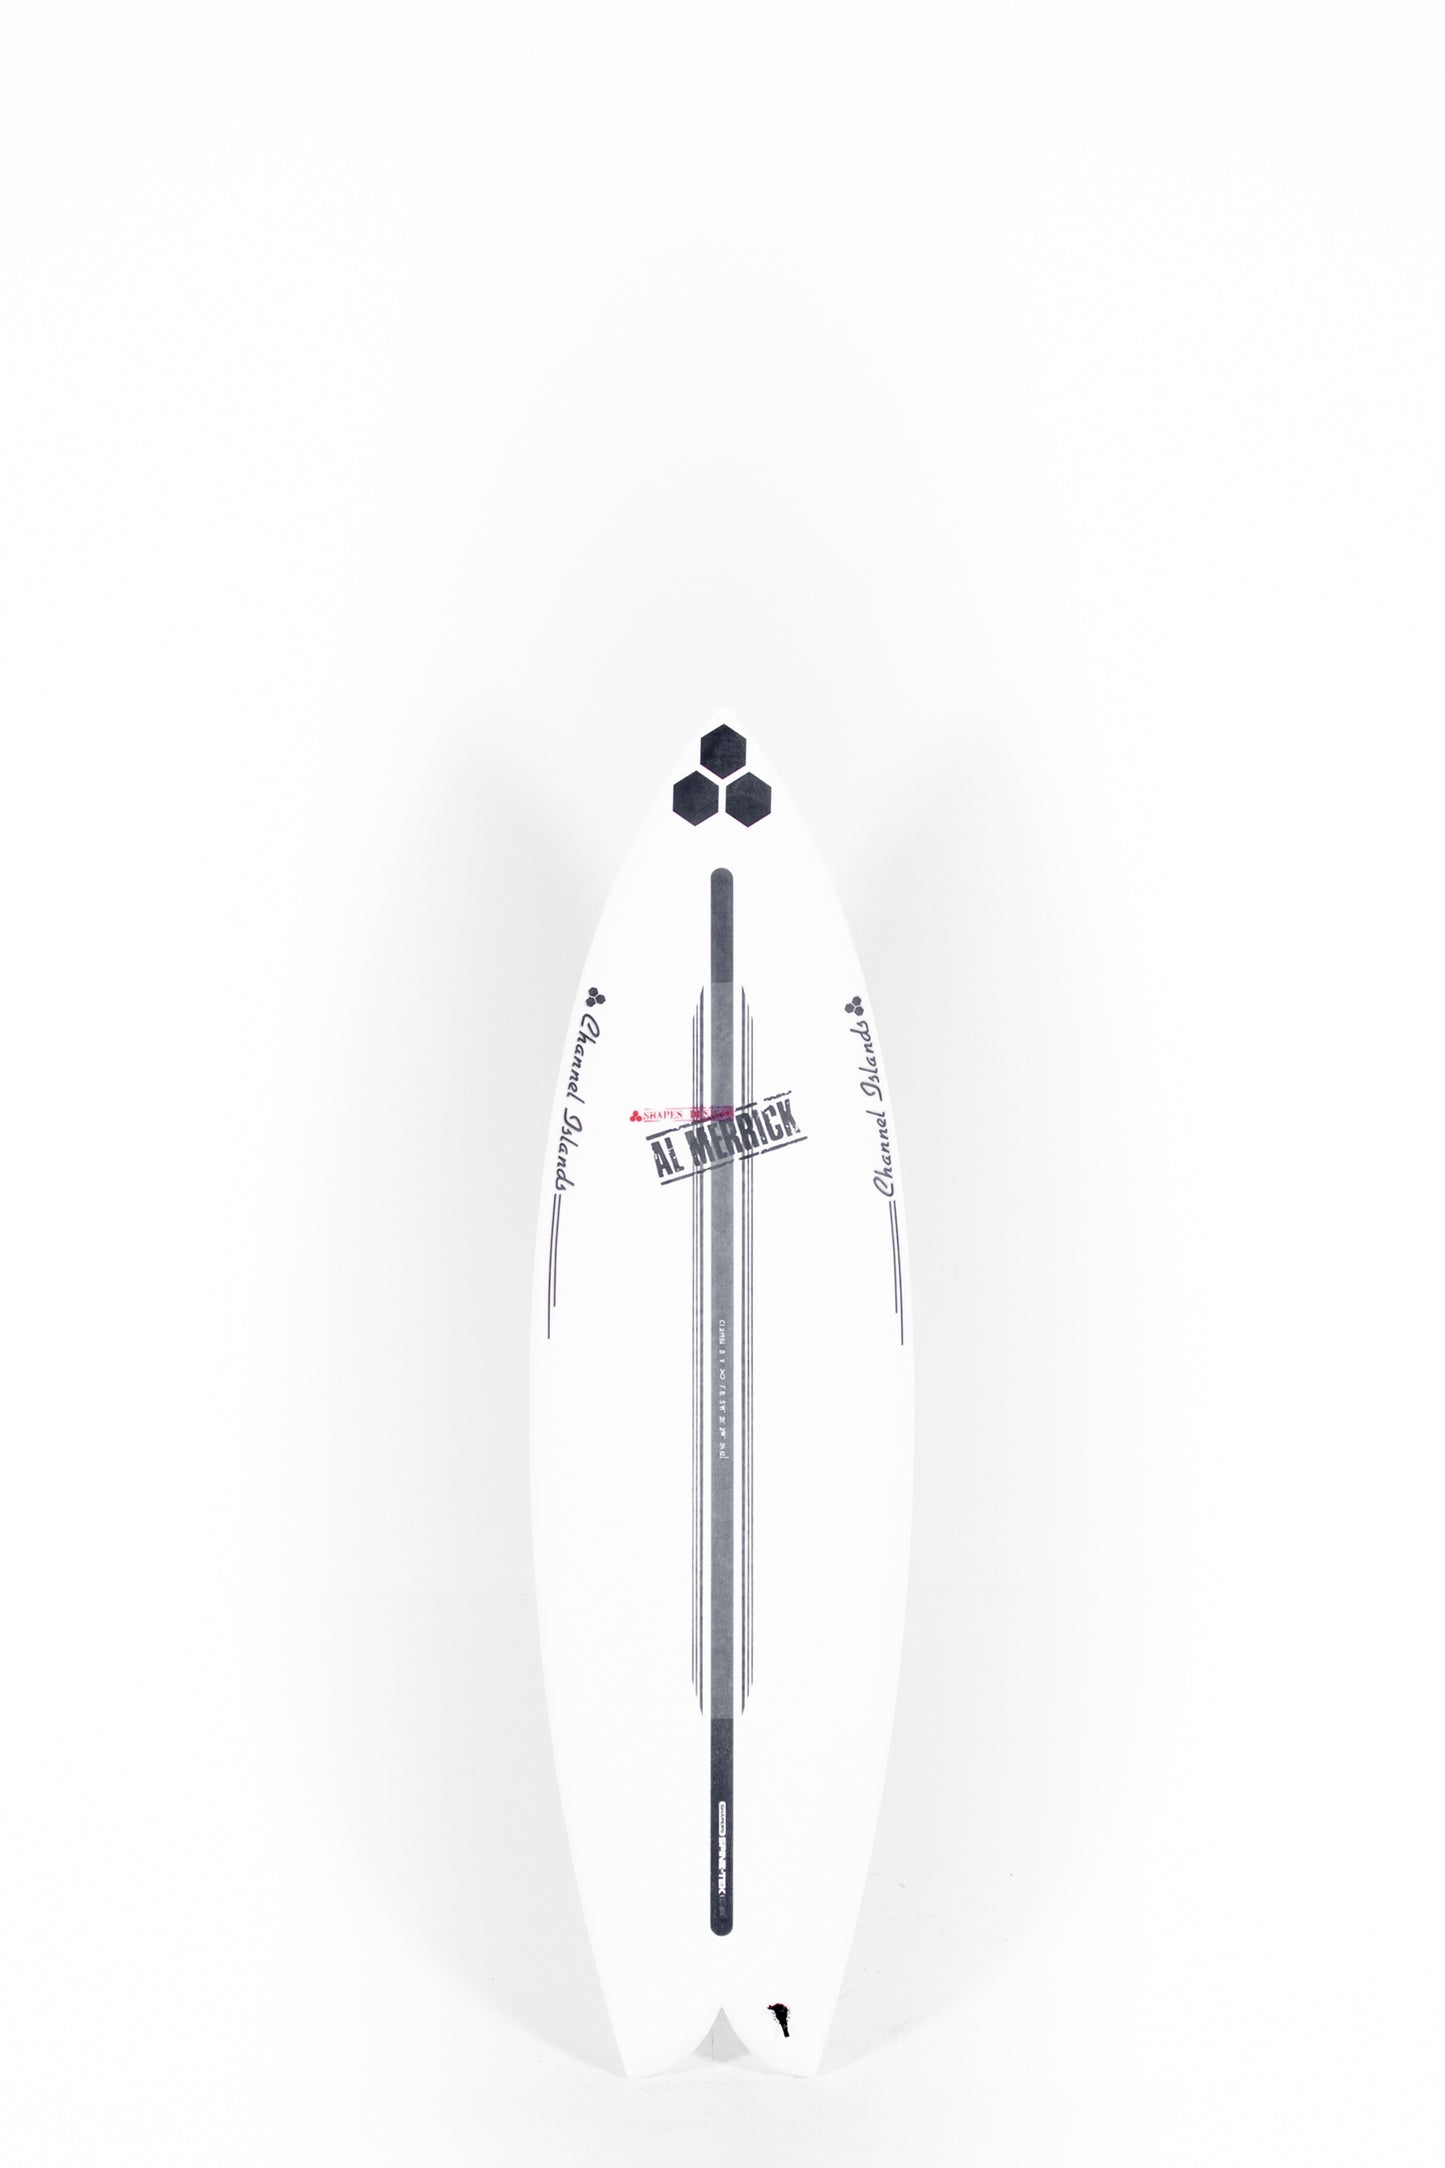 Pukas Surf Shop - Channel Islands - FISHBEARD - Spine Tek - 5'11" x 20 x 2 5/8 - 33,8L - CI21956